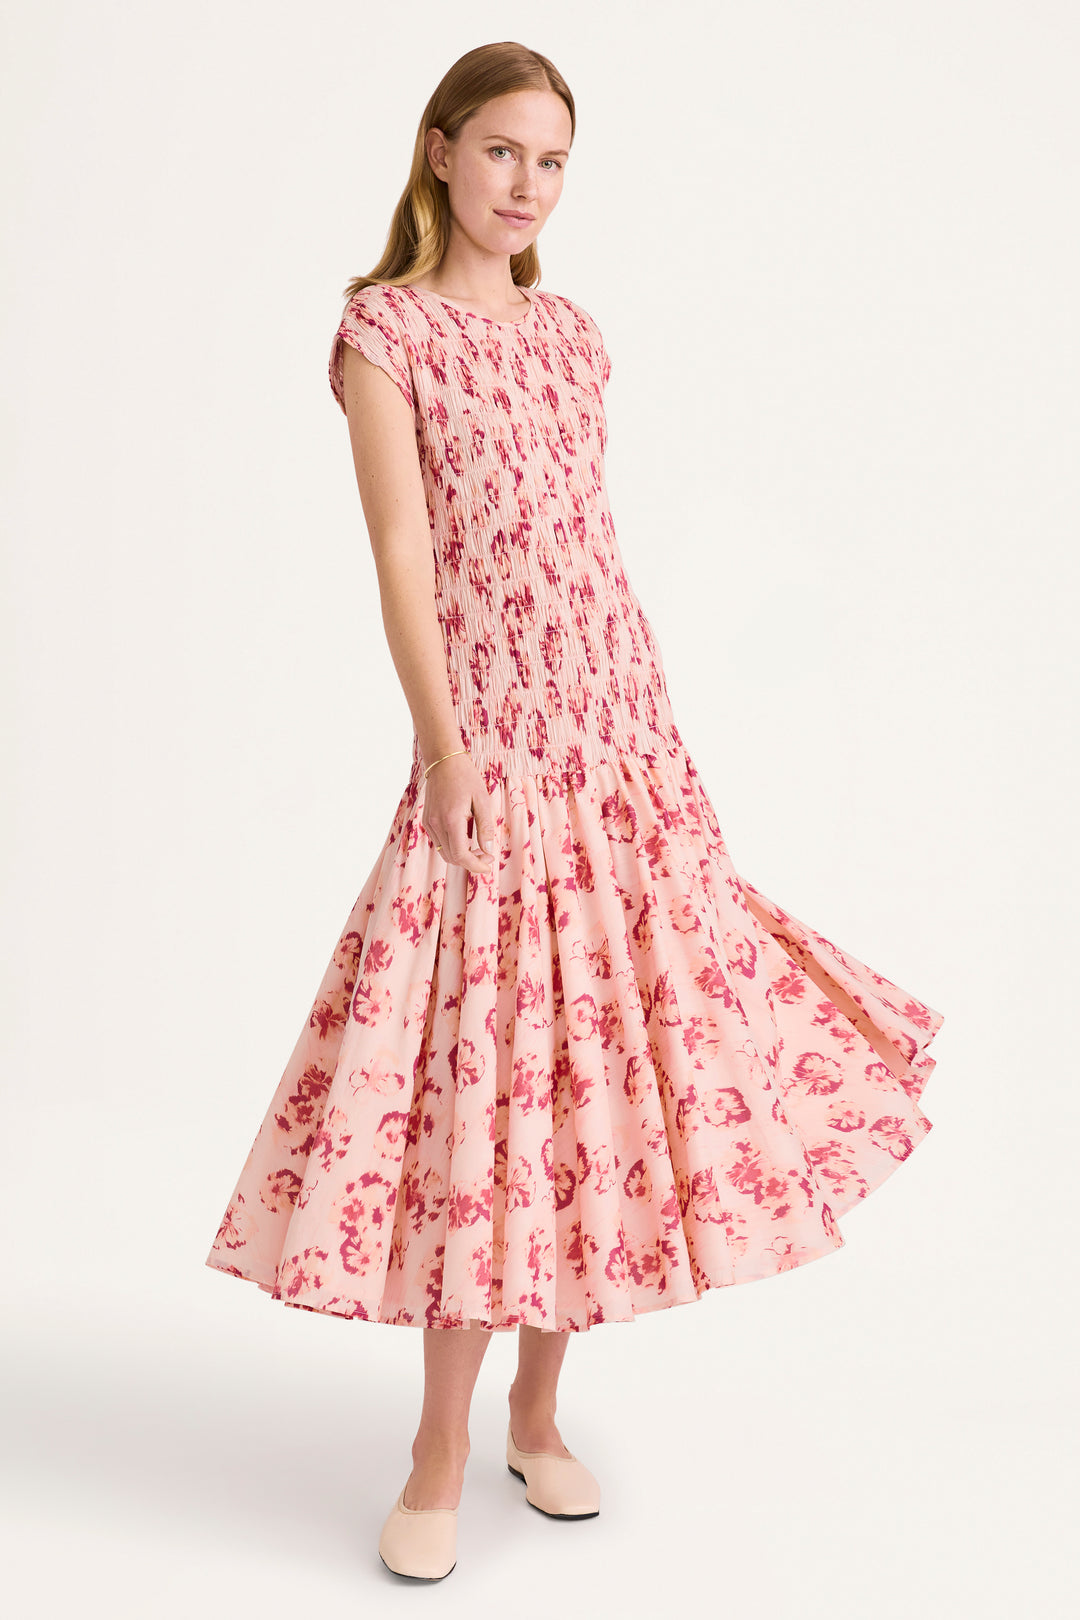 Merlette Stijl Print Dress